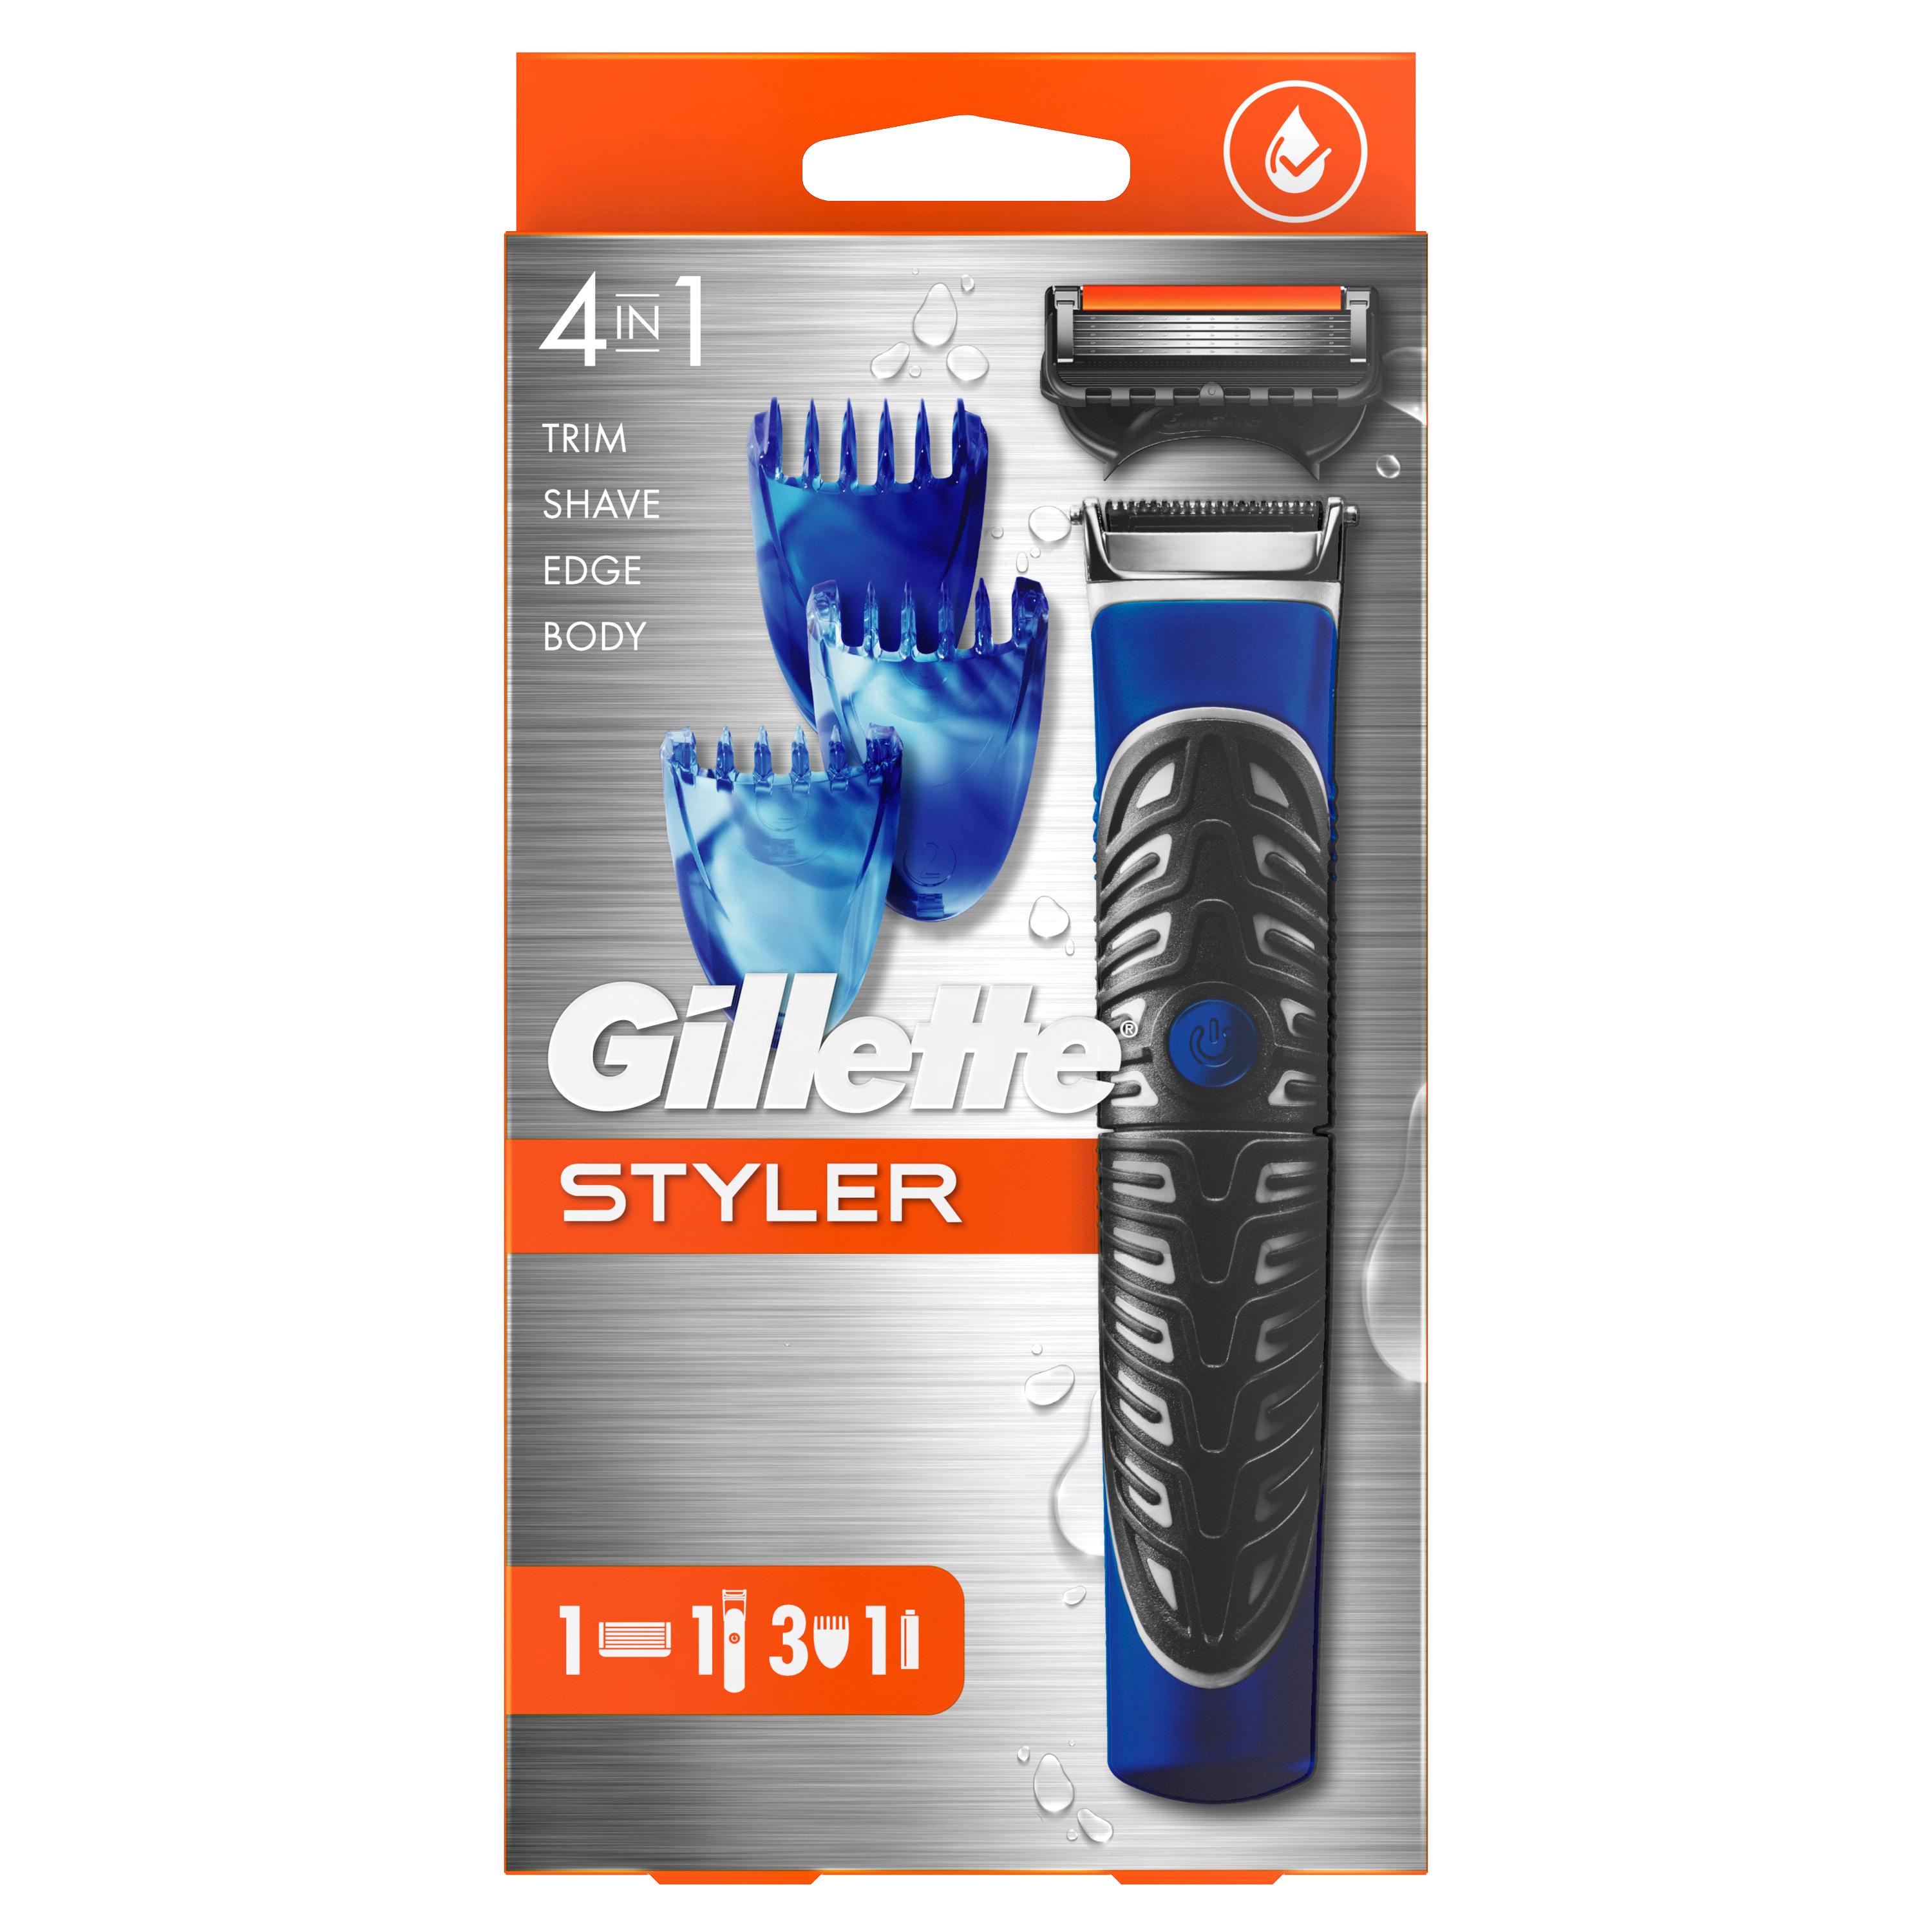 Gillette - ProGlide Styler razor with 1 blade